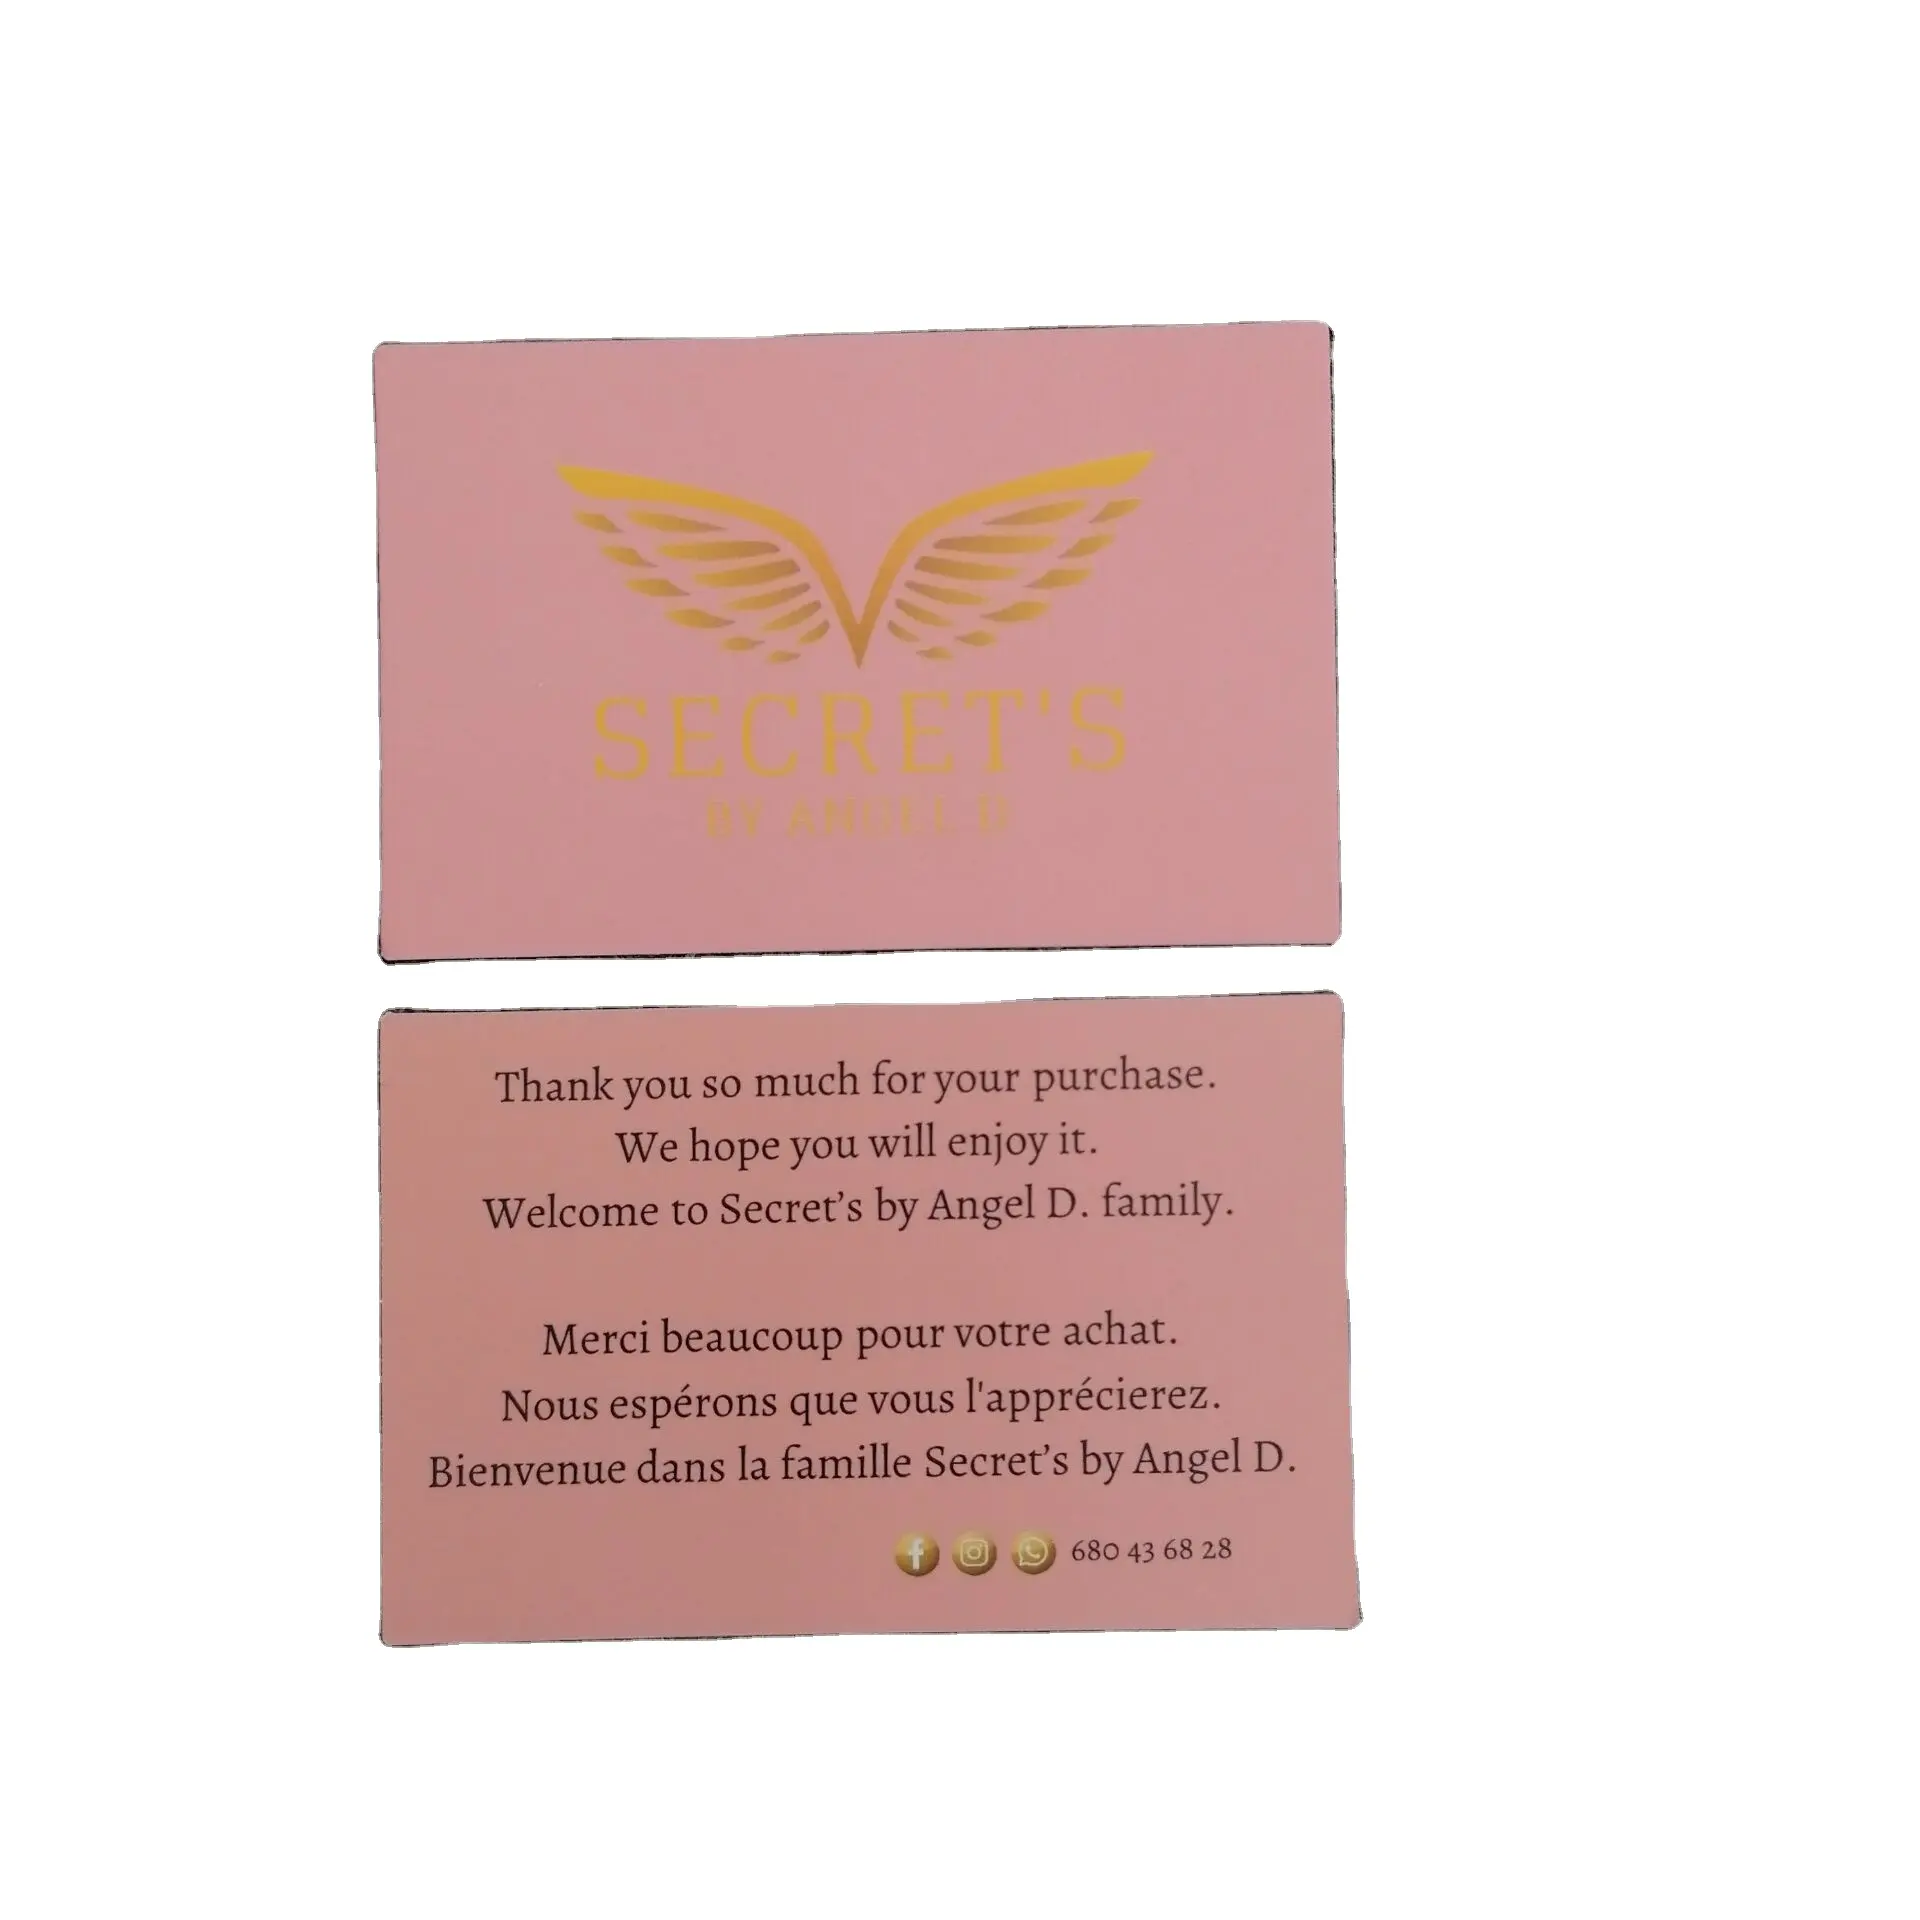 Tarjetas postales personalizadas con impresión Offset, tarjetas de felicitación con logotipo para compras de negocios